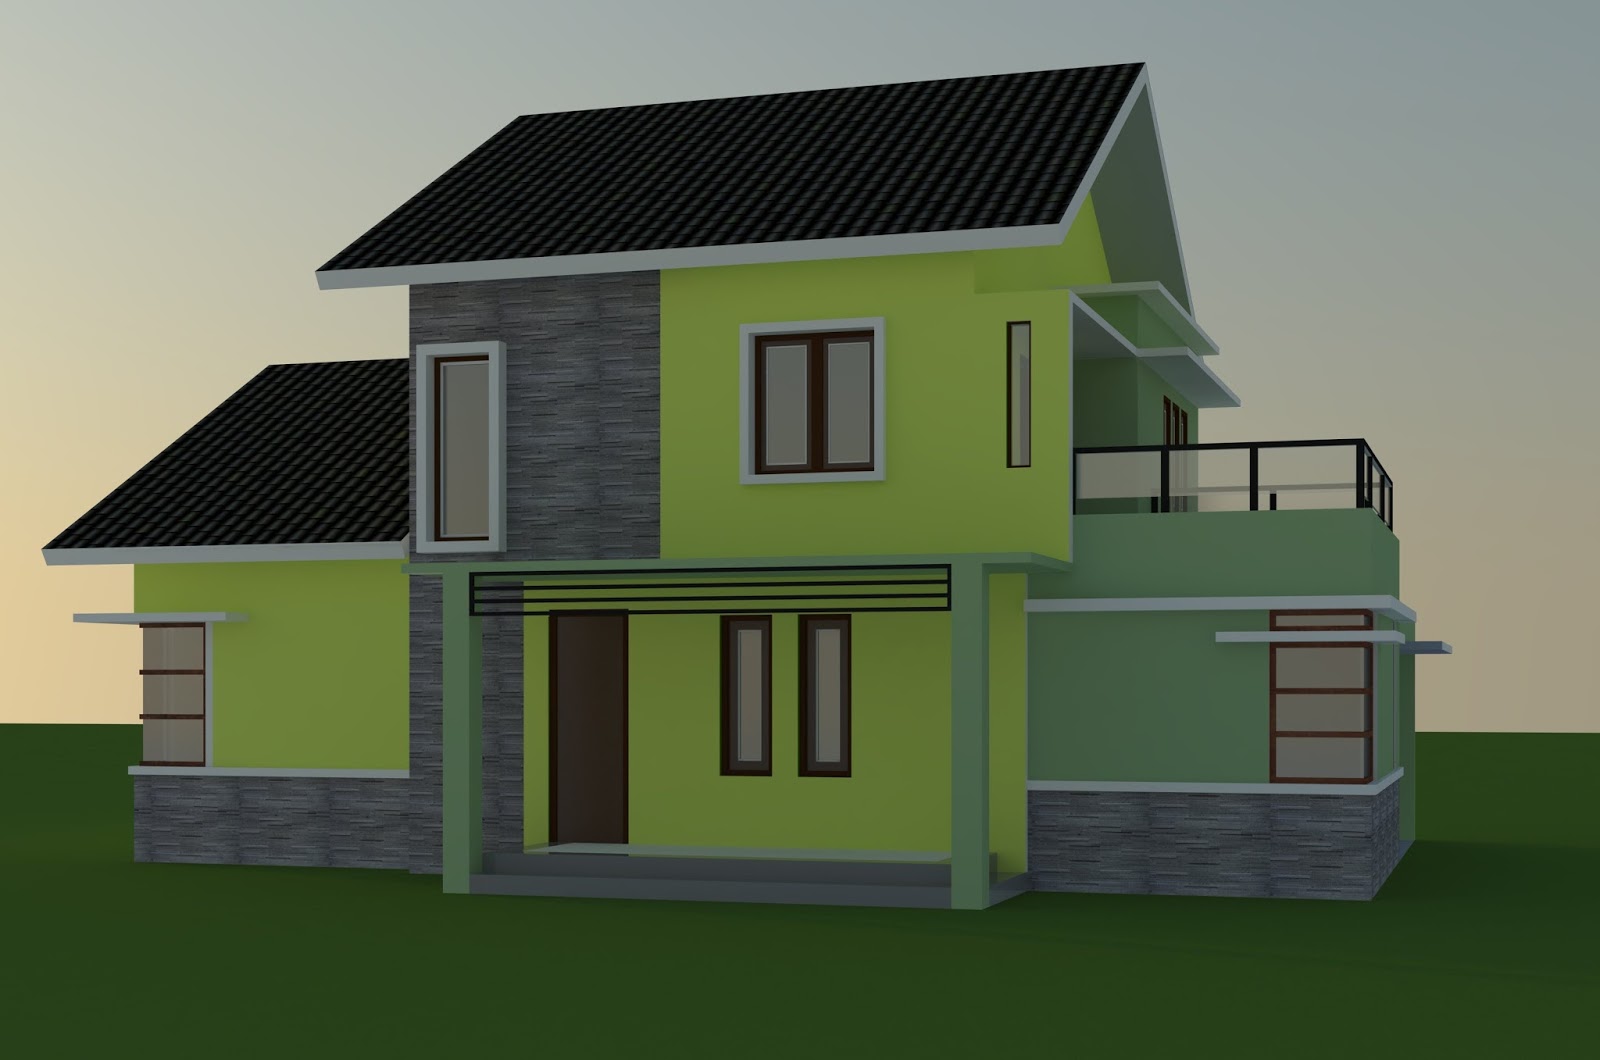 Desain Rumah Menawan Dua Lantai Jasa Desain Gambar Rumah Minimalis Online Murah Harga Terjangkau